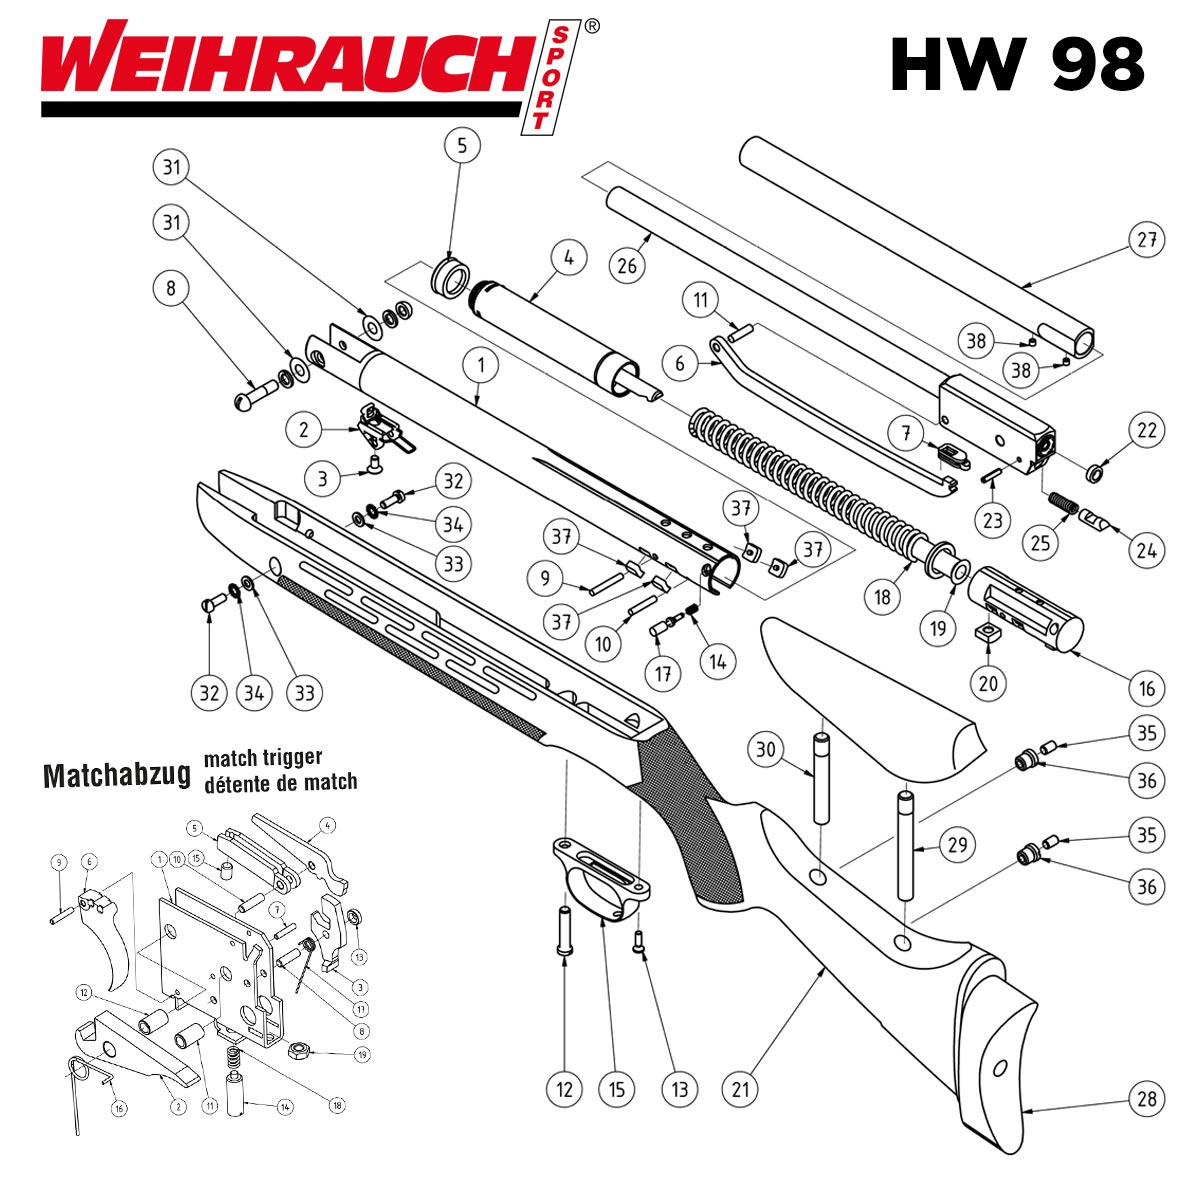 Weihrauch HW 98 Explosionszeichnung und Ersatzteile online bestellen